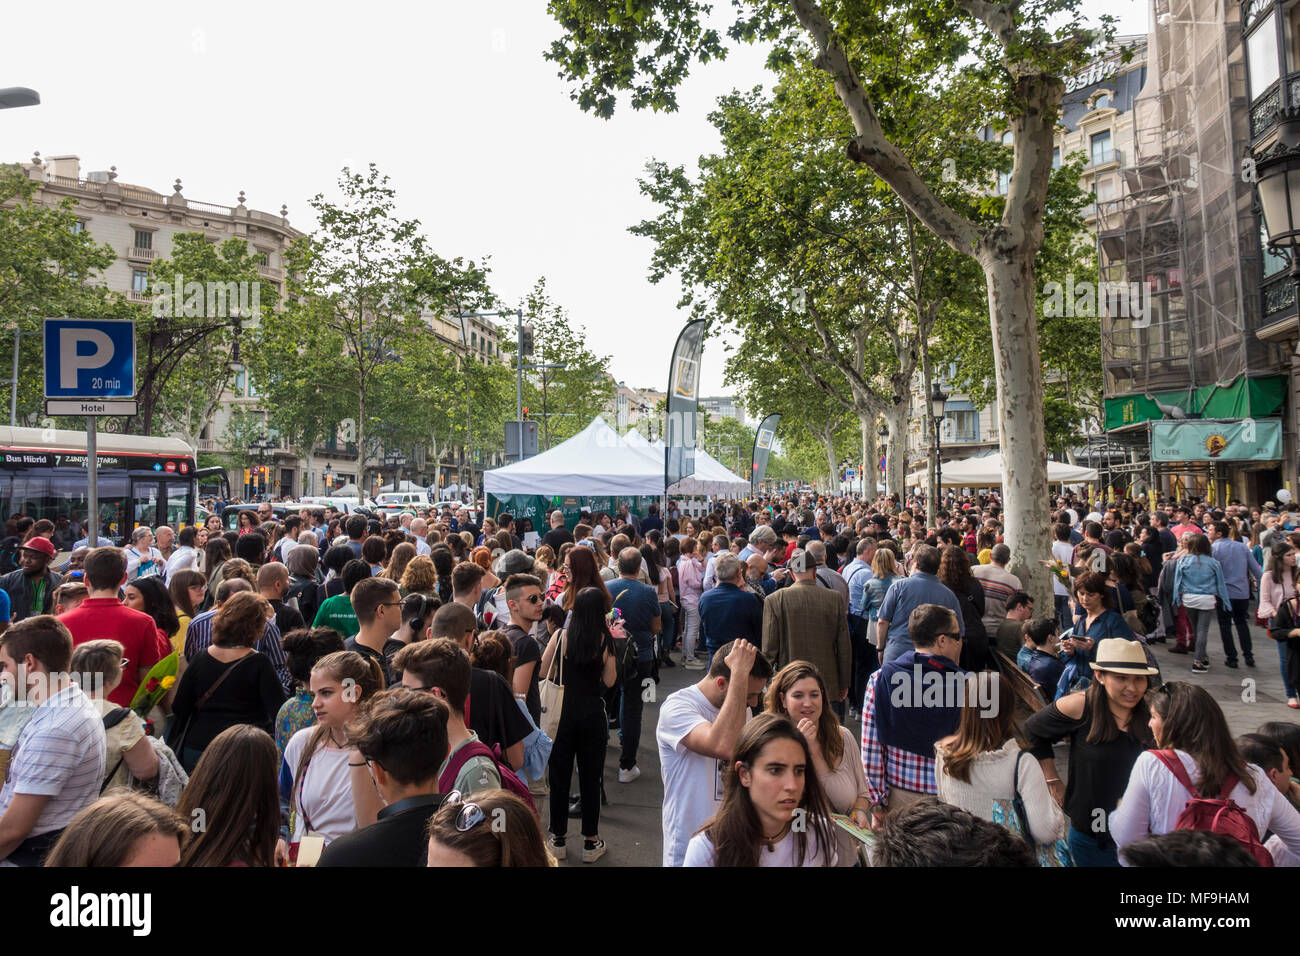 Barcelone, Espagne. 23 avril 2018 : Diada de Sant Jordi ou le jour de l'ouvrage, une célèbre fête catalane. Foule de gens anonymes marche sur Passei Banque D'Images